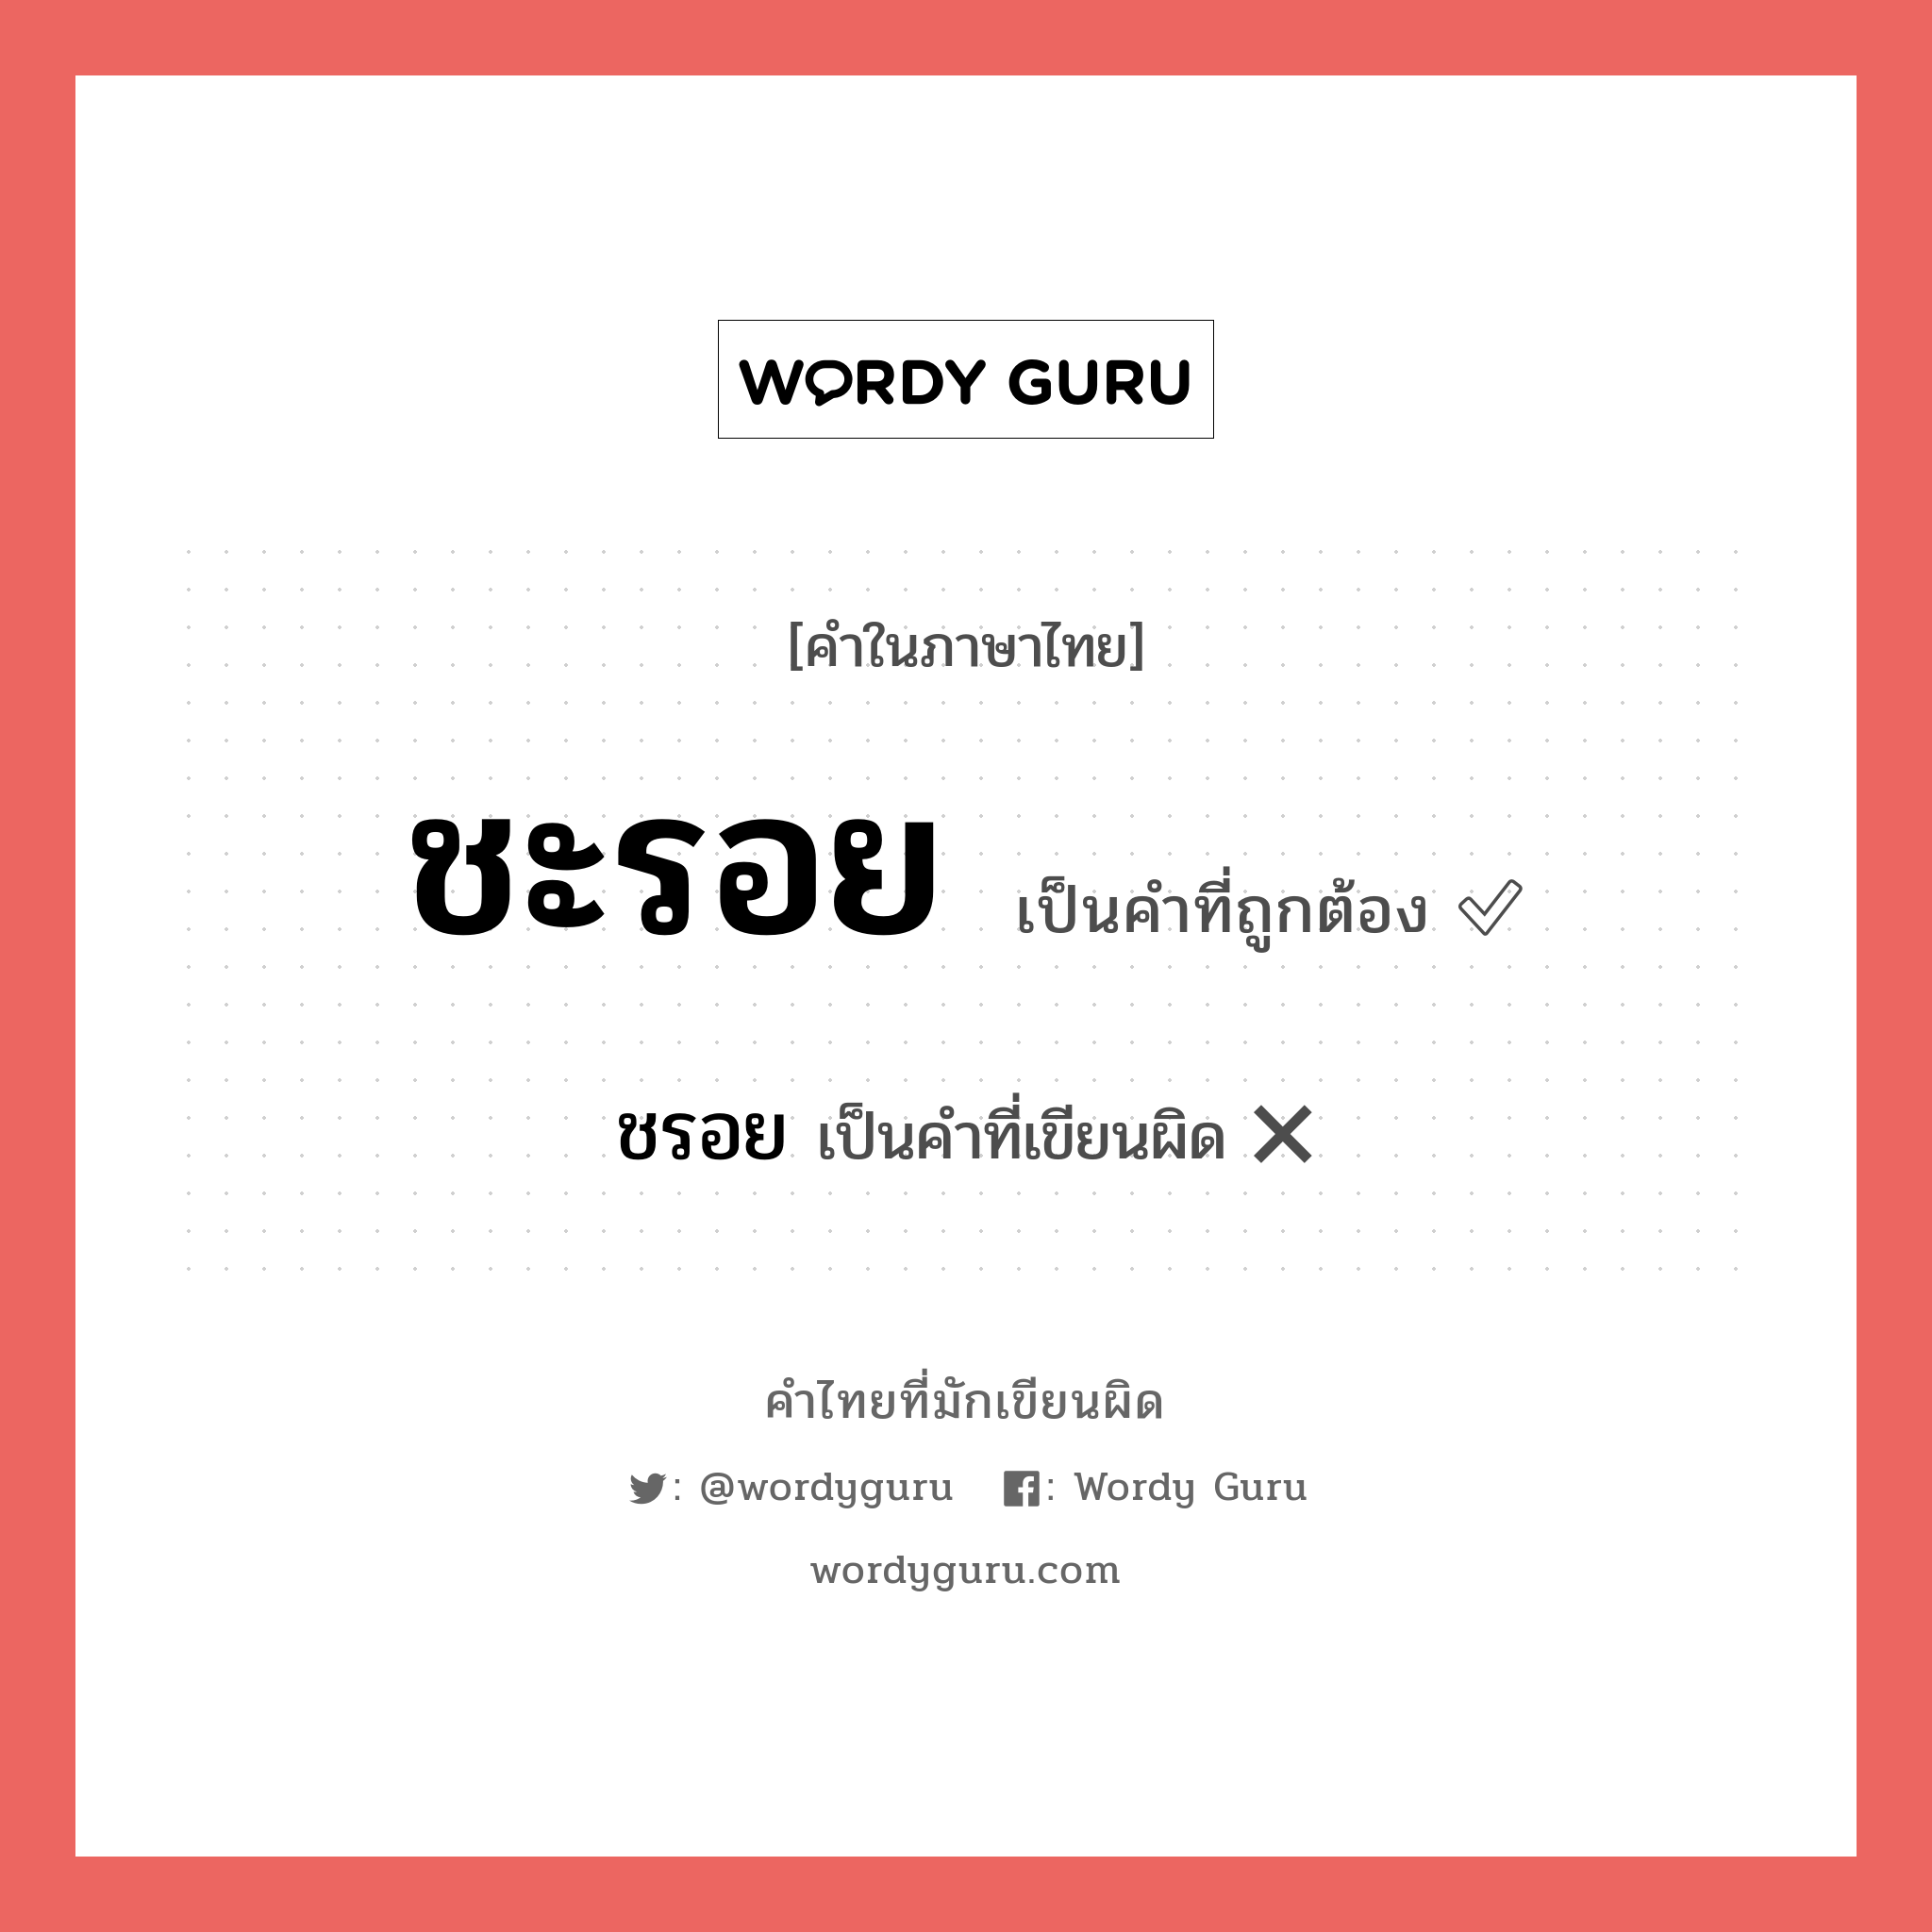 ชรอย หรือ ชะรอย คำไหนเขียนถูก?, คำในภาษาไทยที่มักเขียนผิด ชรอย คำที่ผิด ❌ ชะรอย